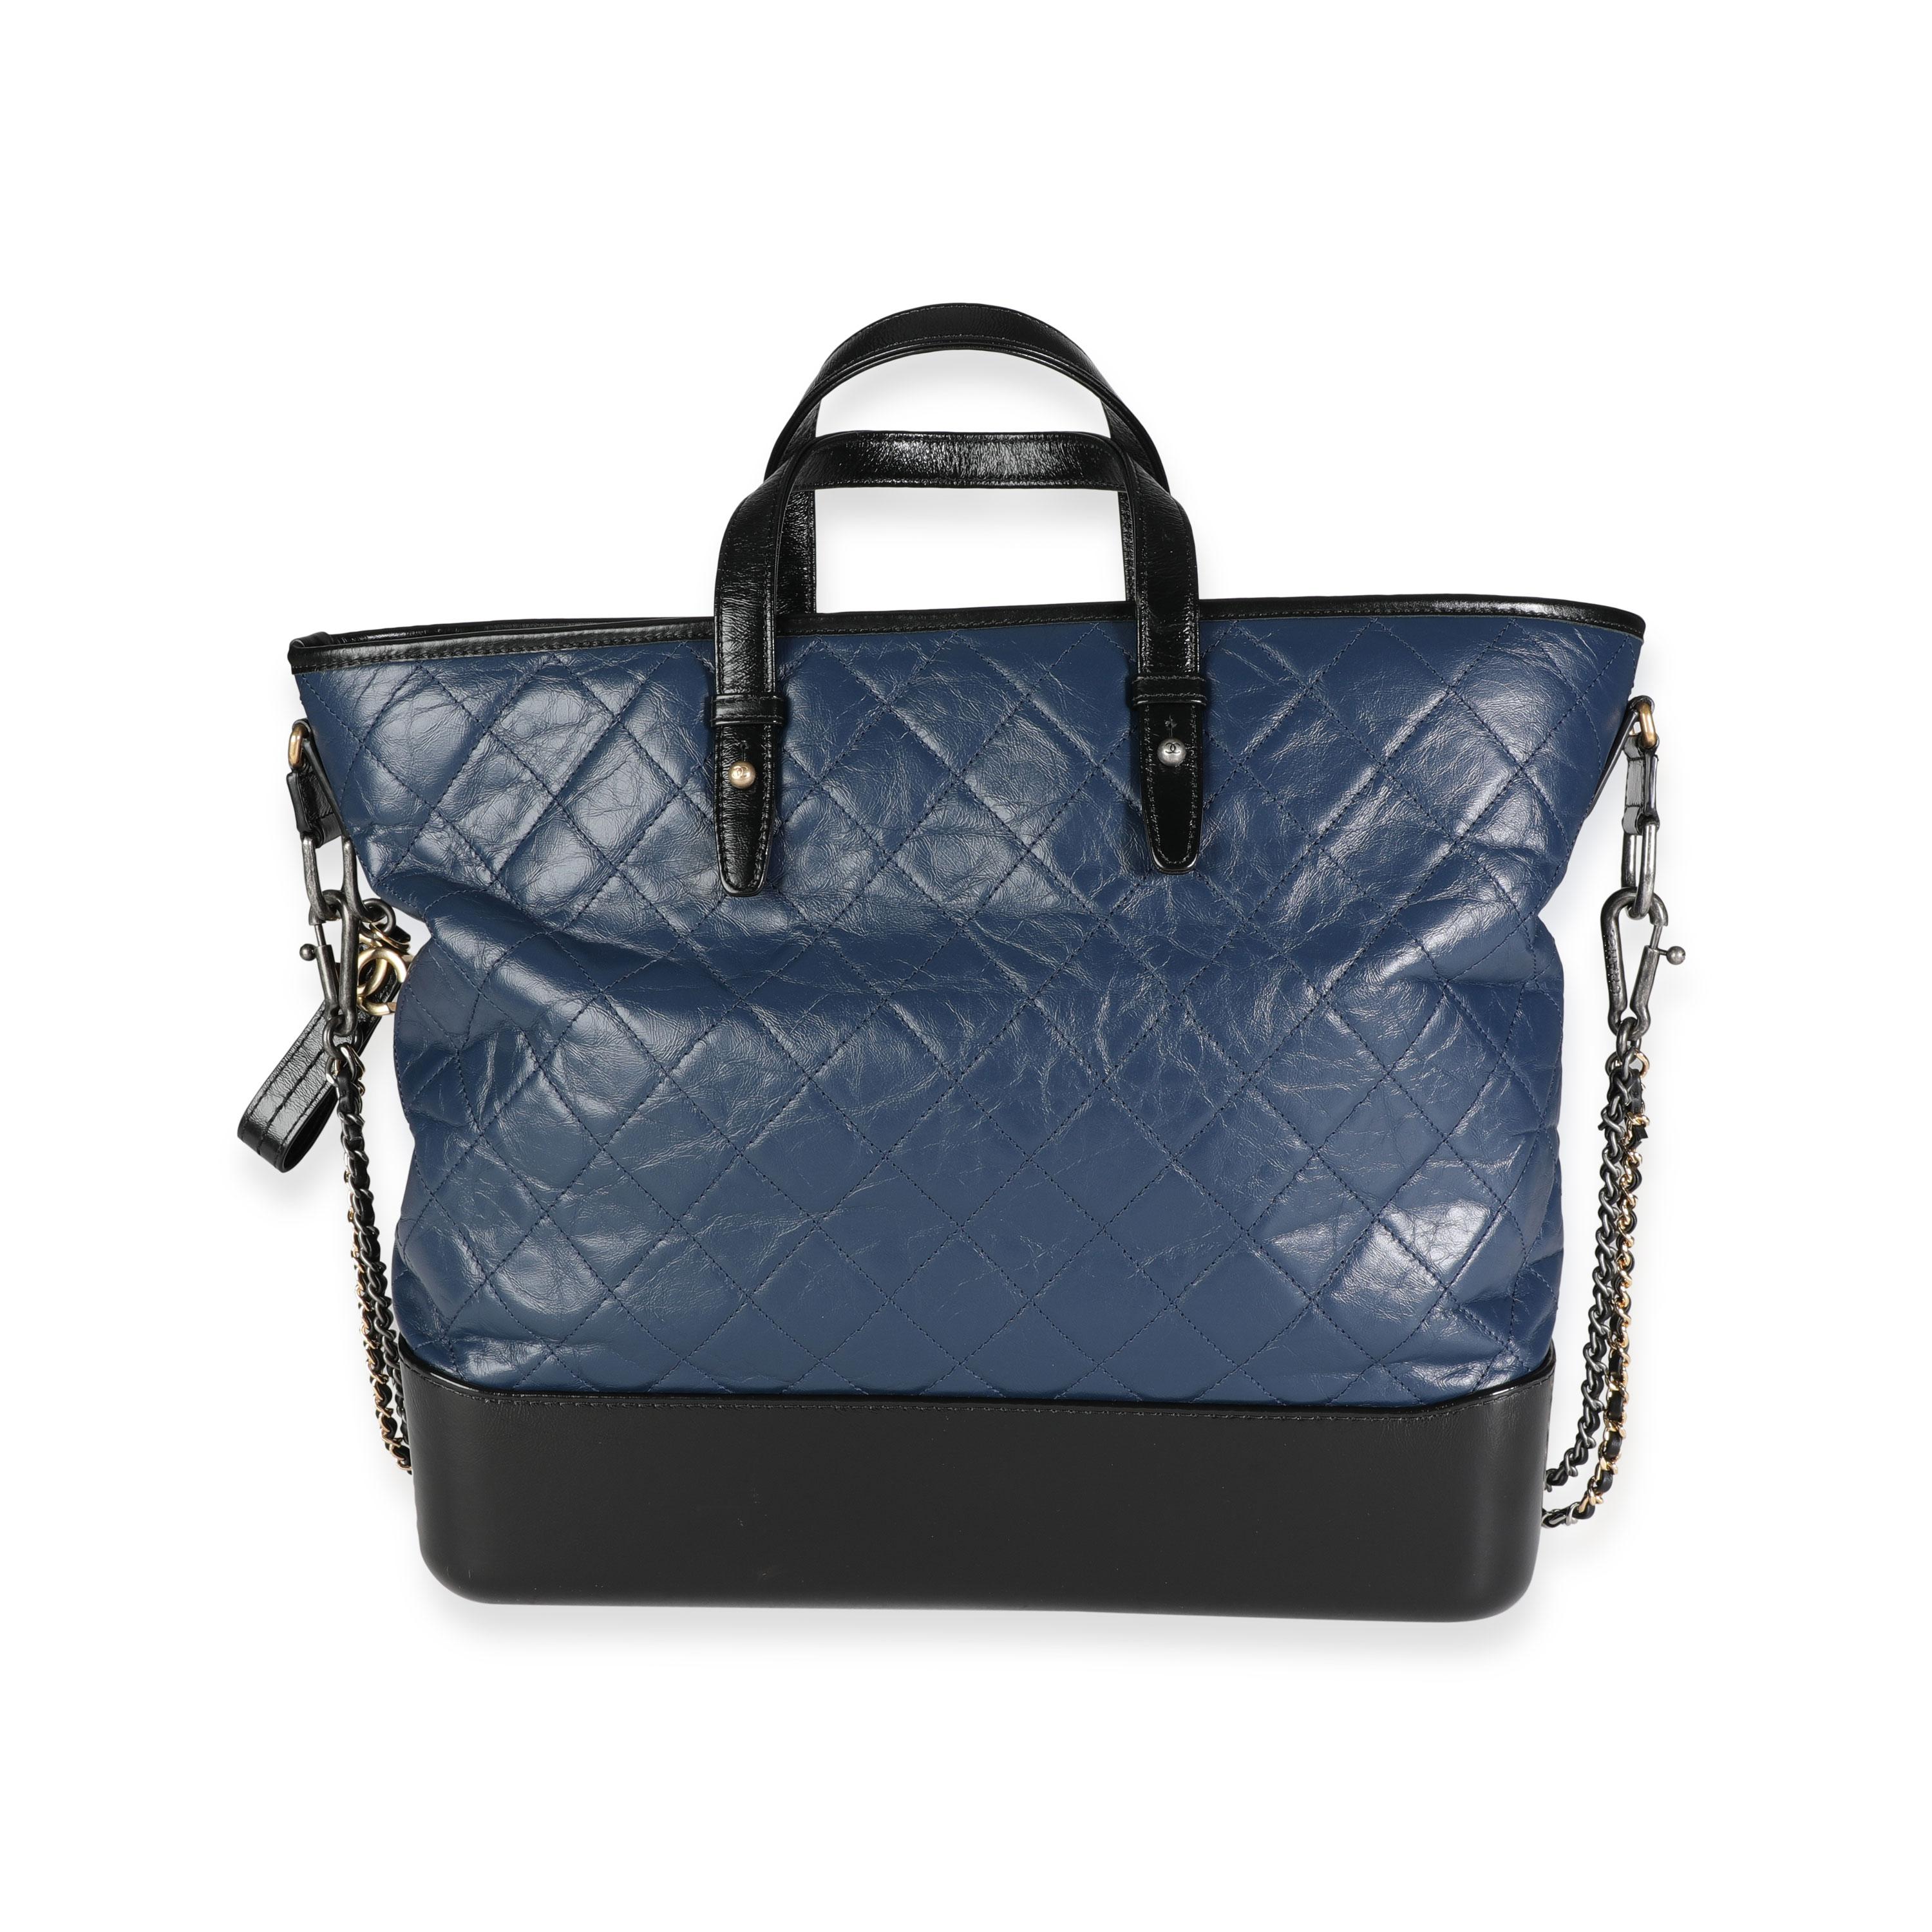 Noir Chanel - Grand sac cabas Gabrielle en cuir de veau matelassé noir et bleu en vente